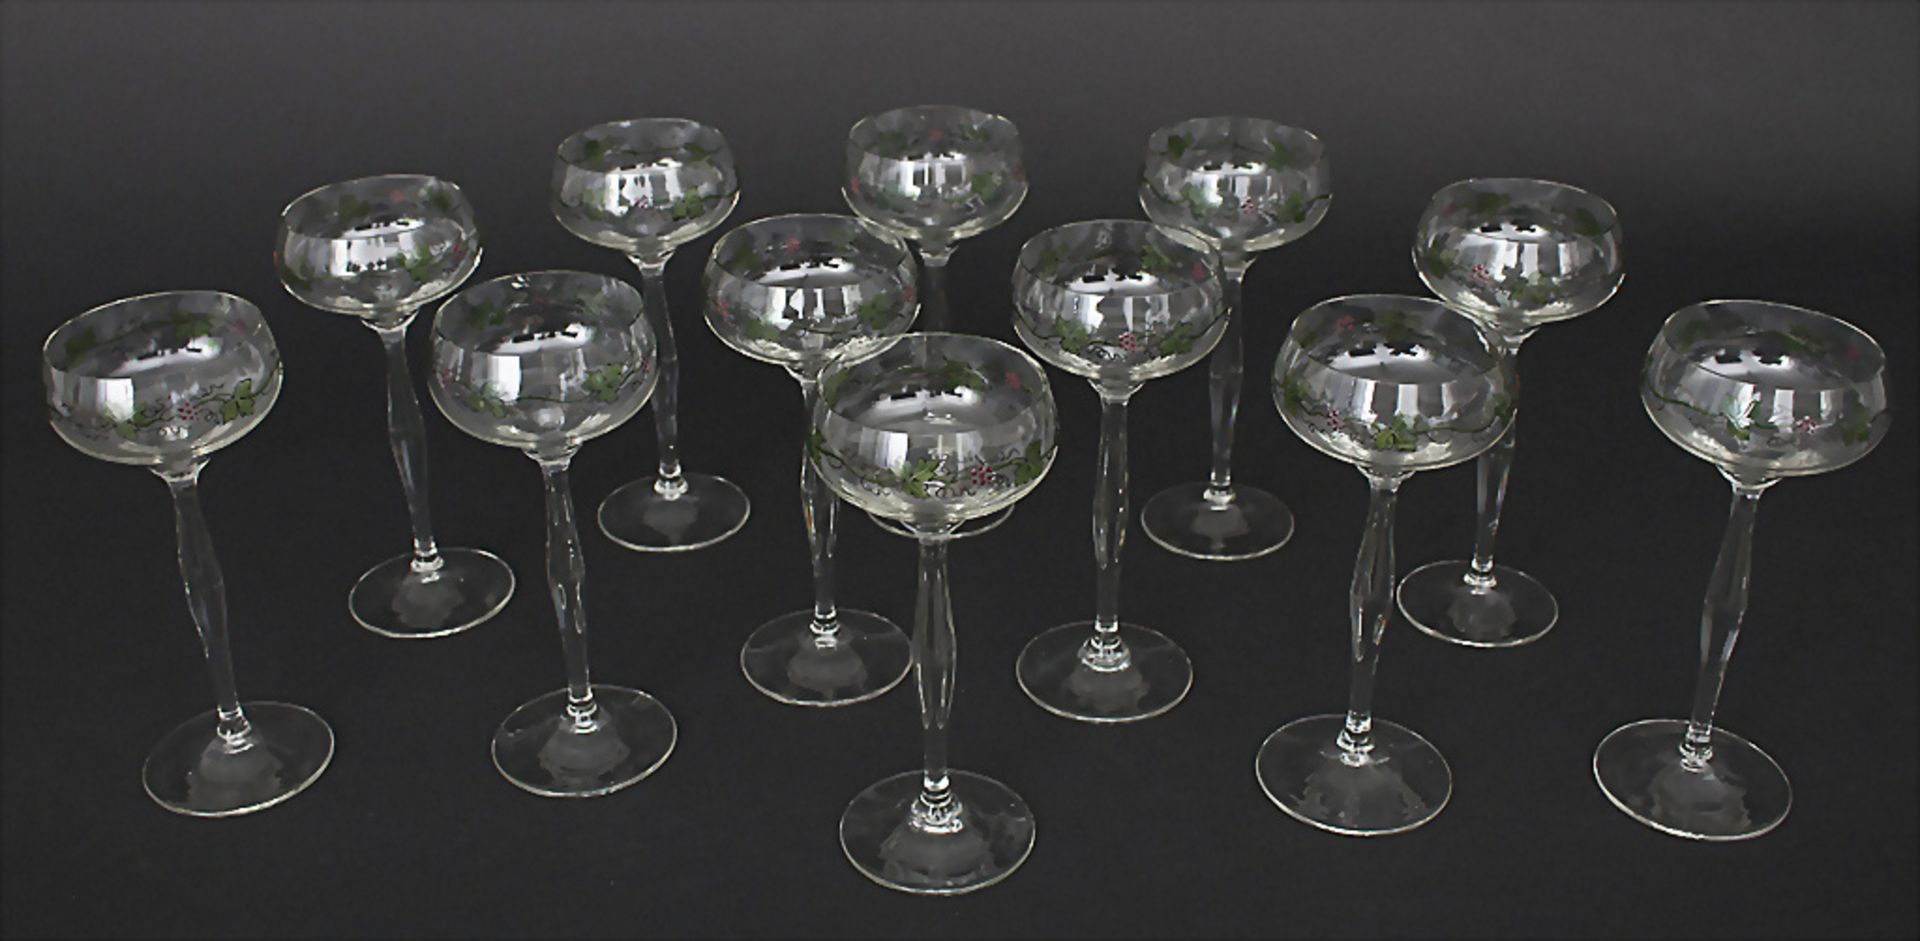 12 Jugendstil Weingläser / A set of 12 Art Nouveau wine glasses, Theresienthal, um 1900 - Image 2 of 3